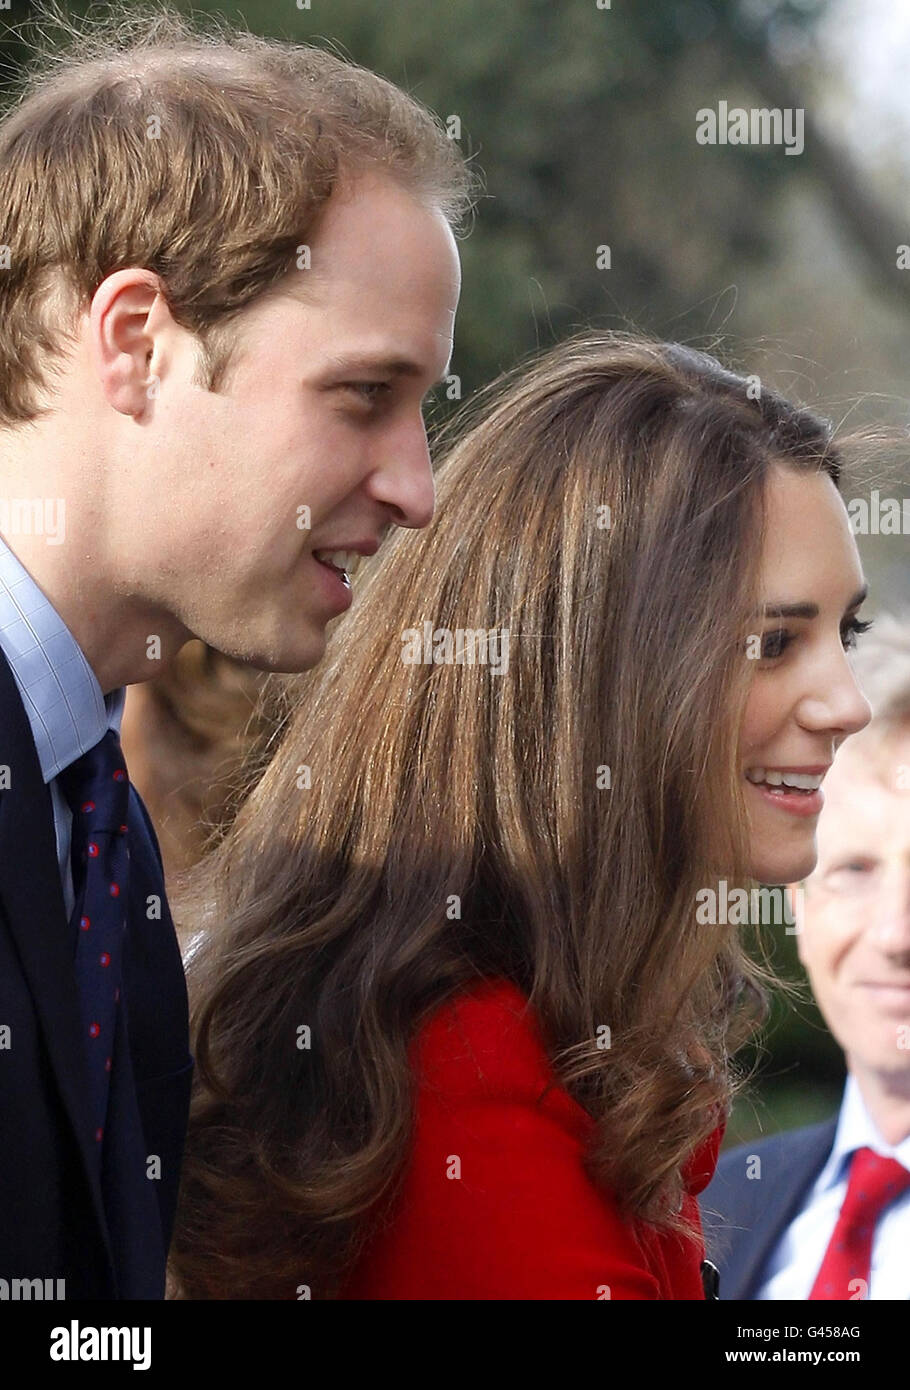 Le Prince William et Kate Middleton arrivent à St Andrews, en Écosse, avant une visite à l'Université de St Andrews, où le couple s'est rencontré pour la première fois. Banque D'Images